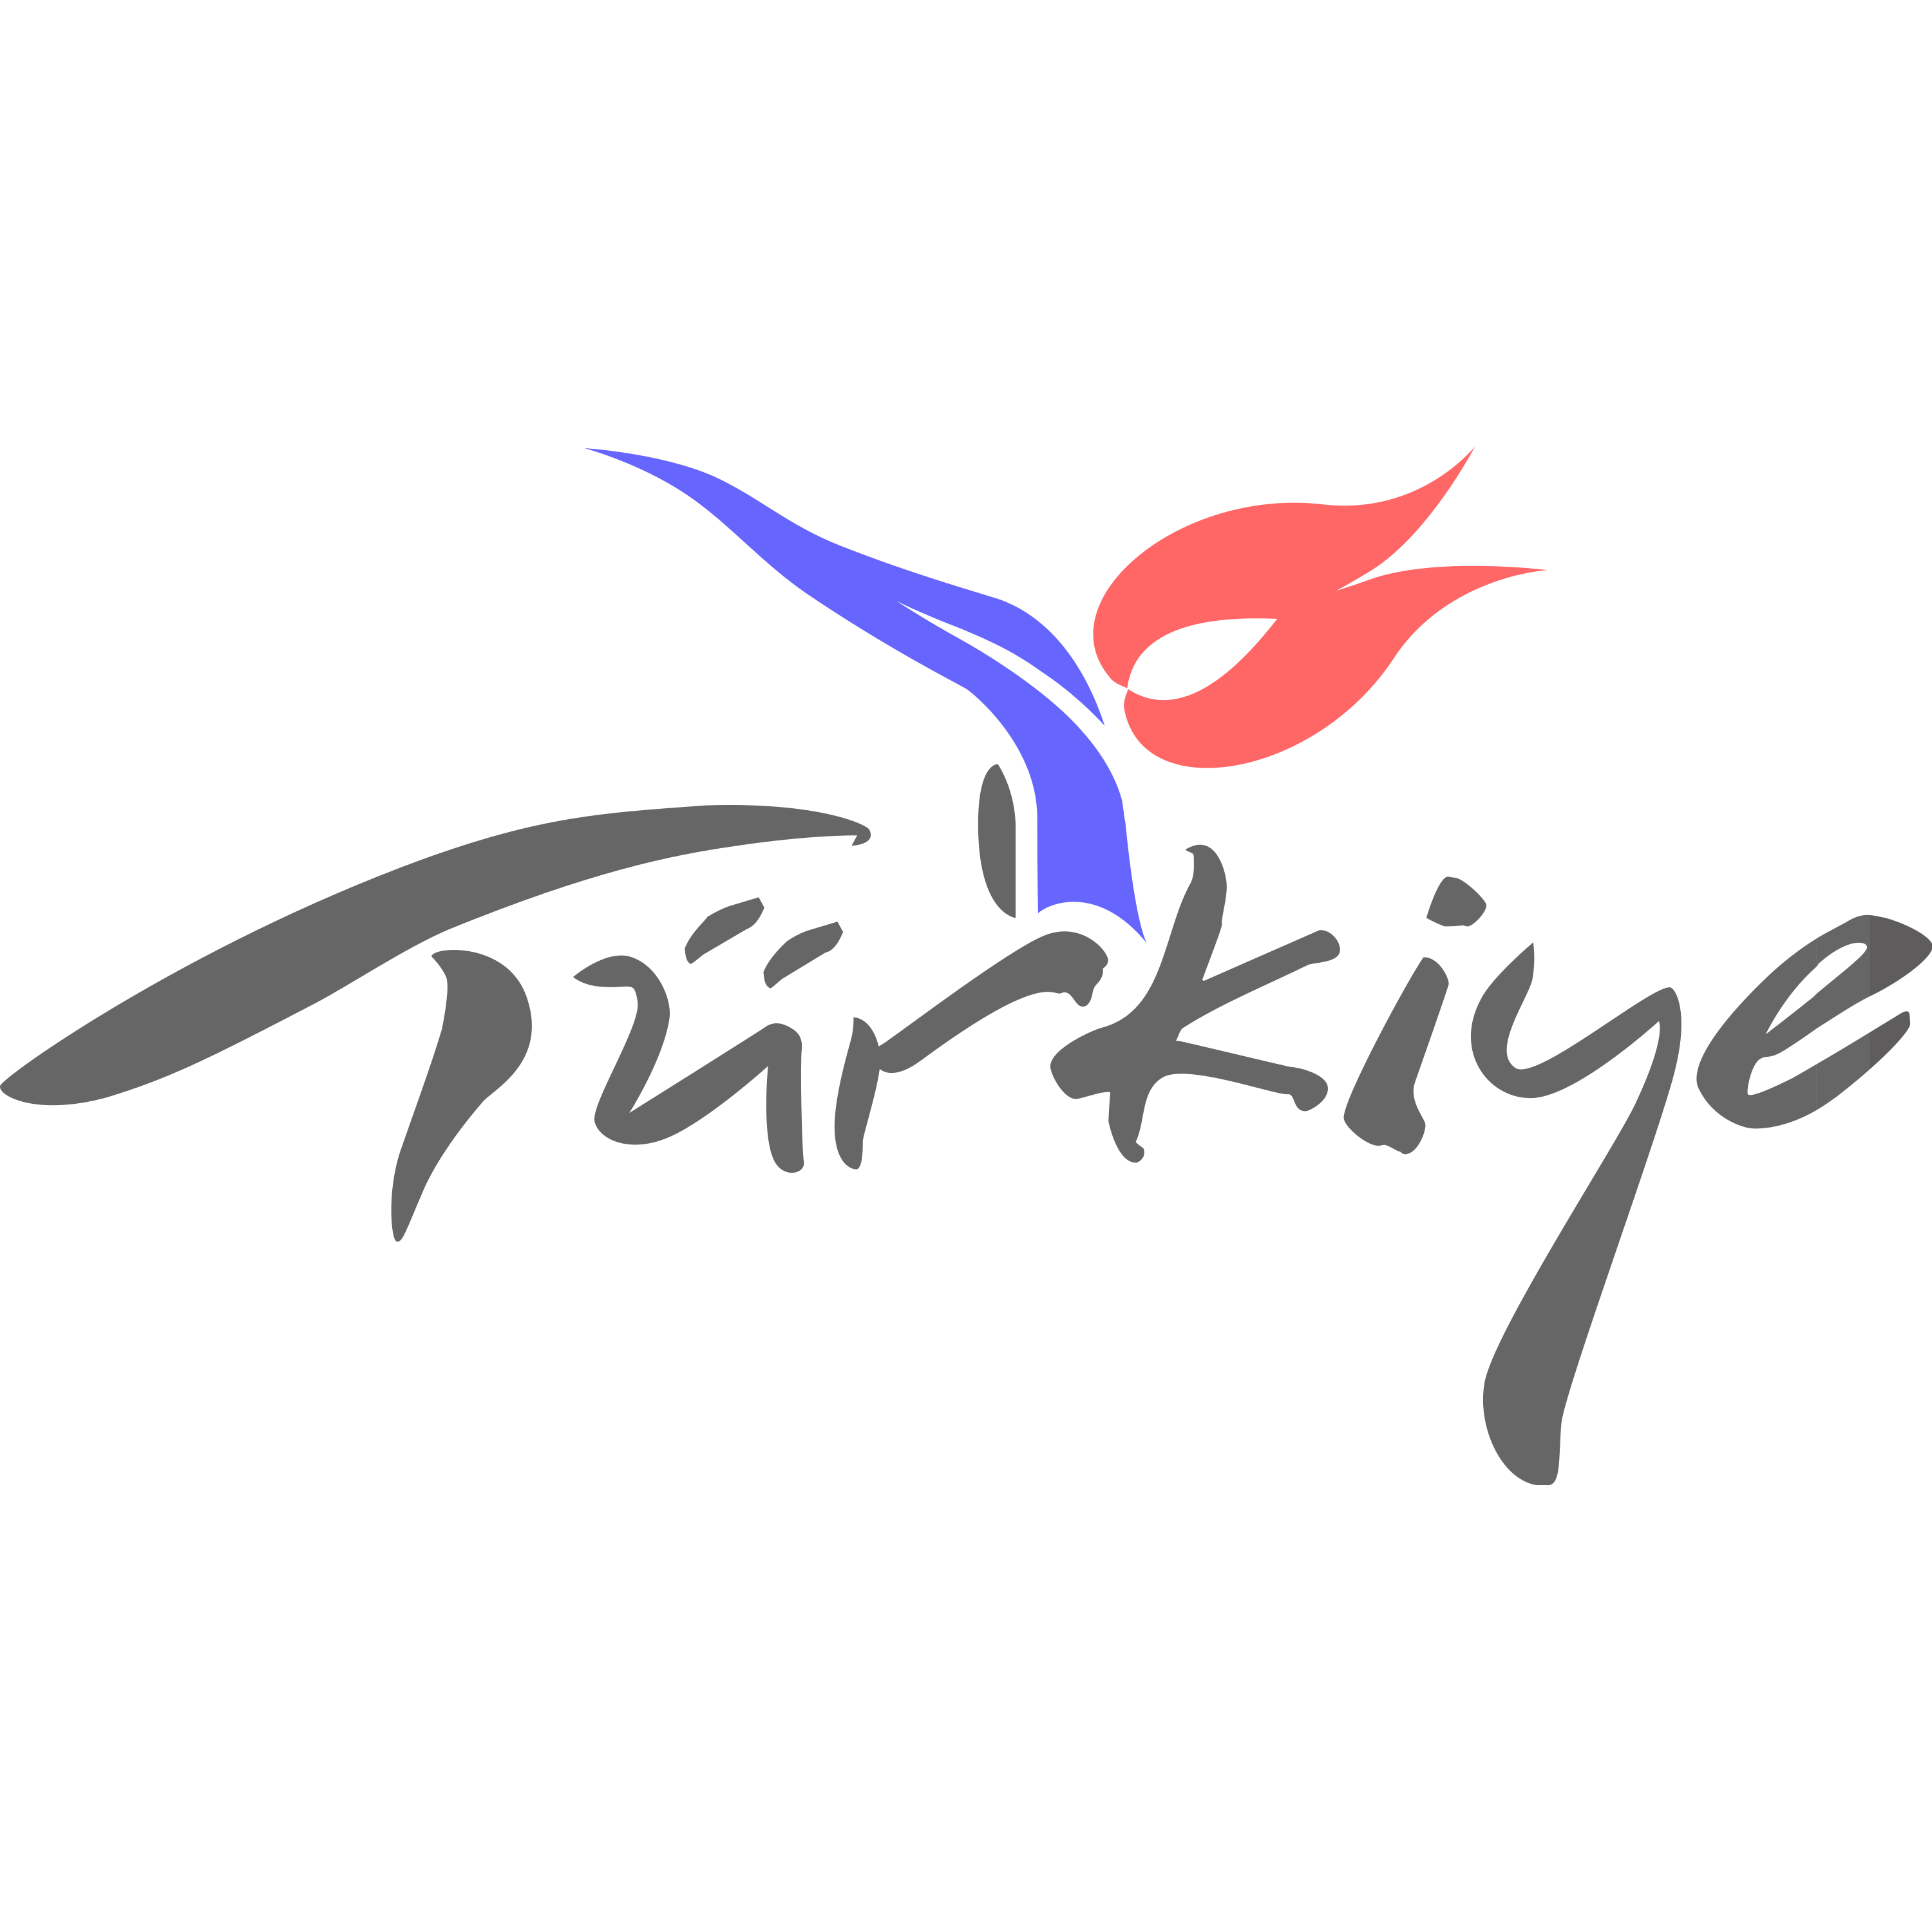 Türkiye Logo Transparent Photo